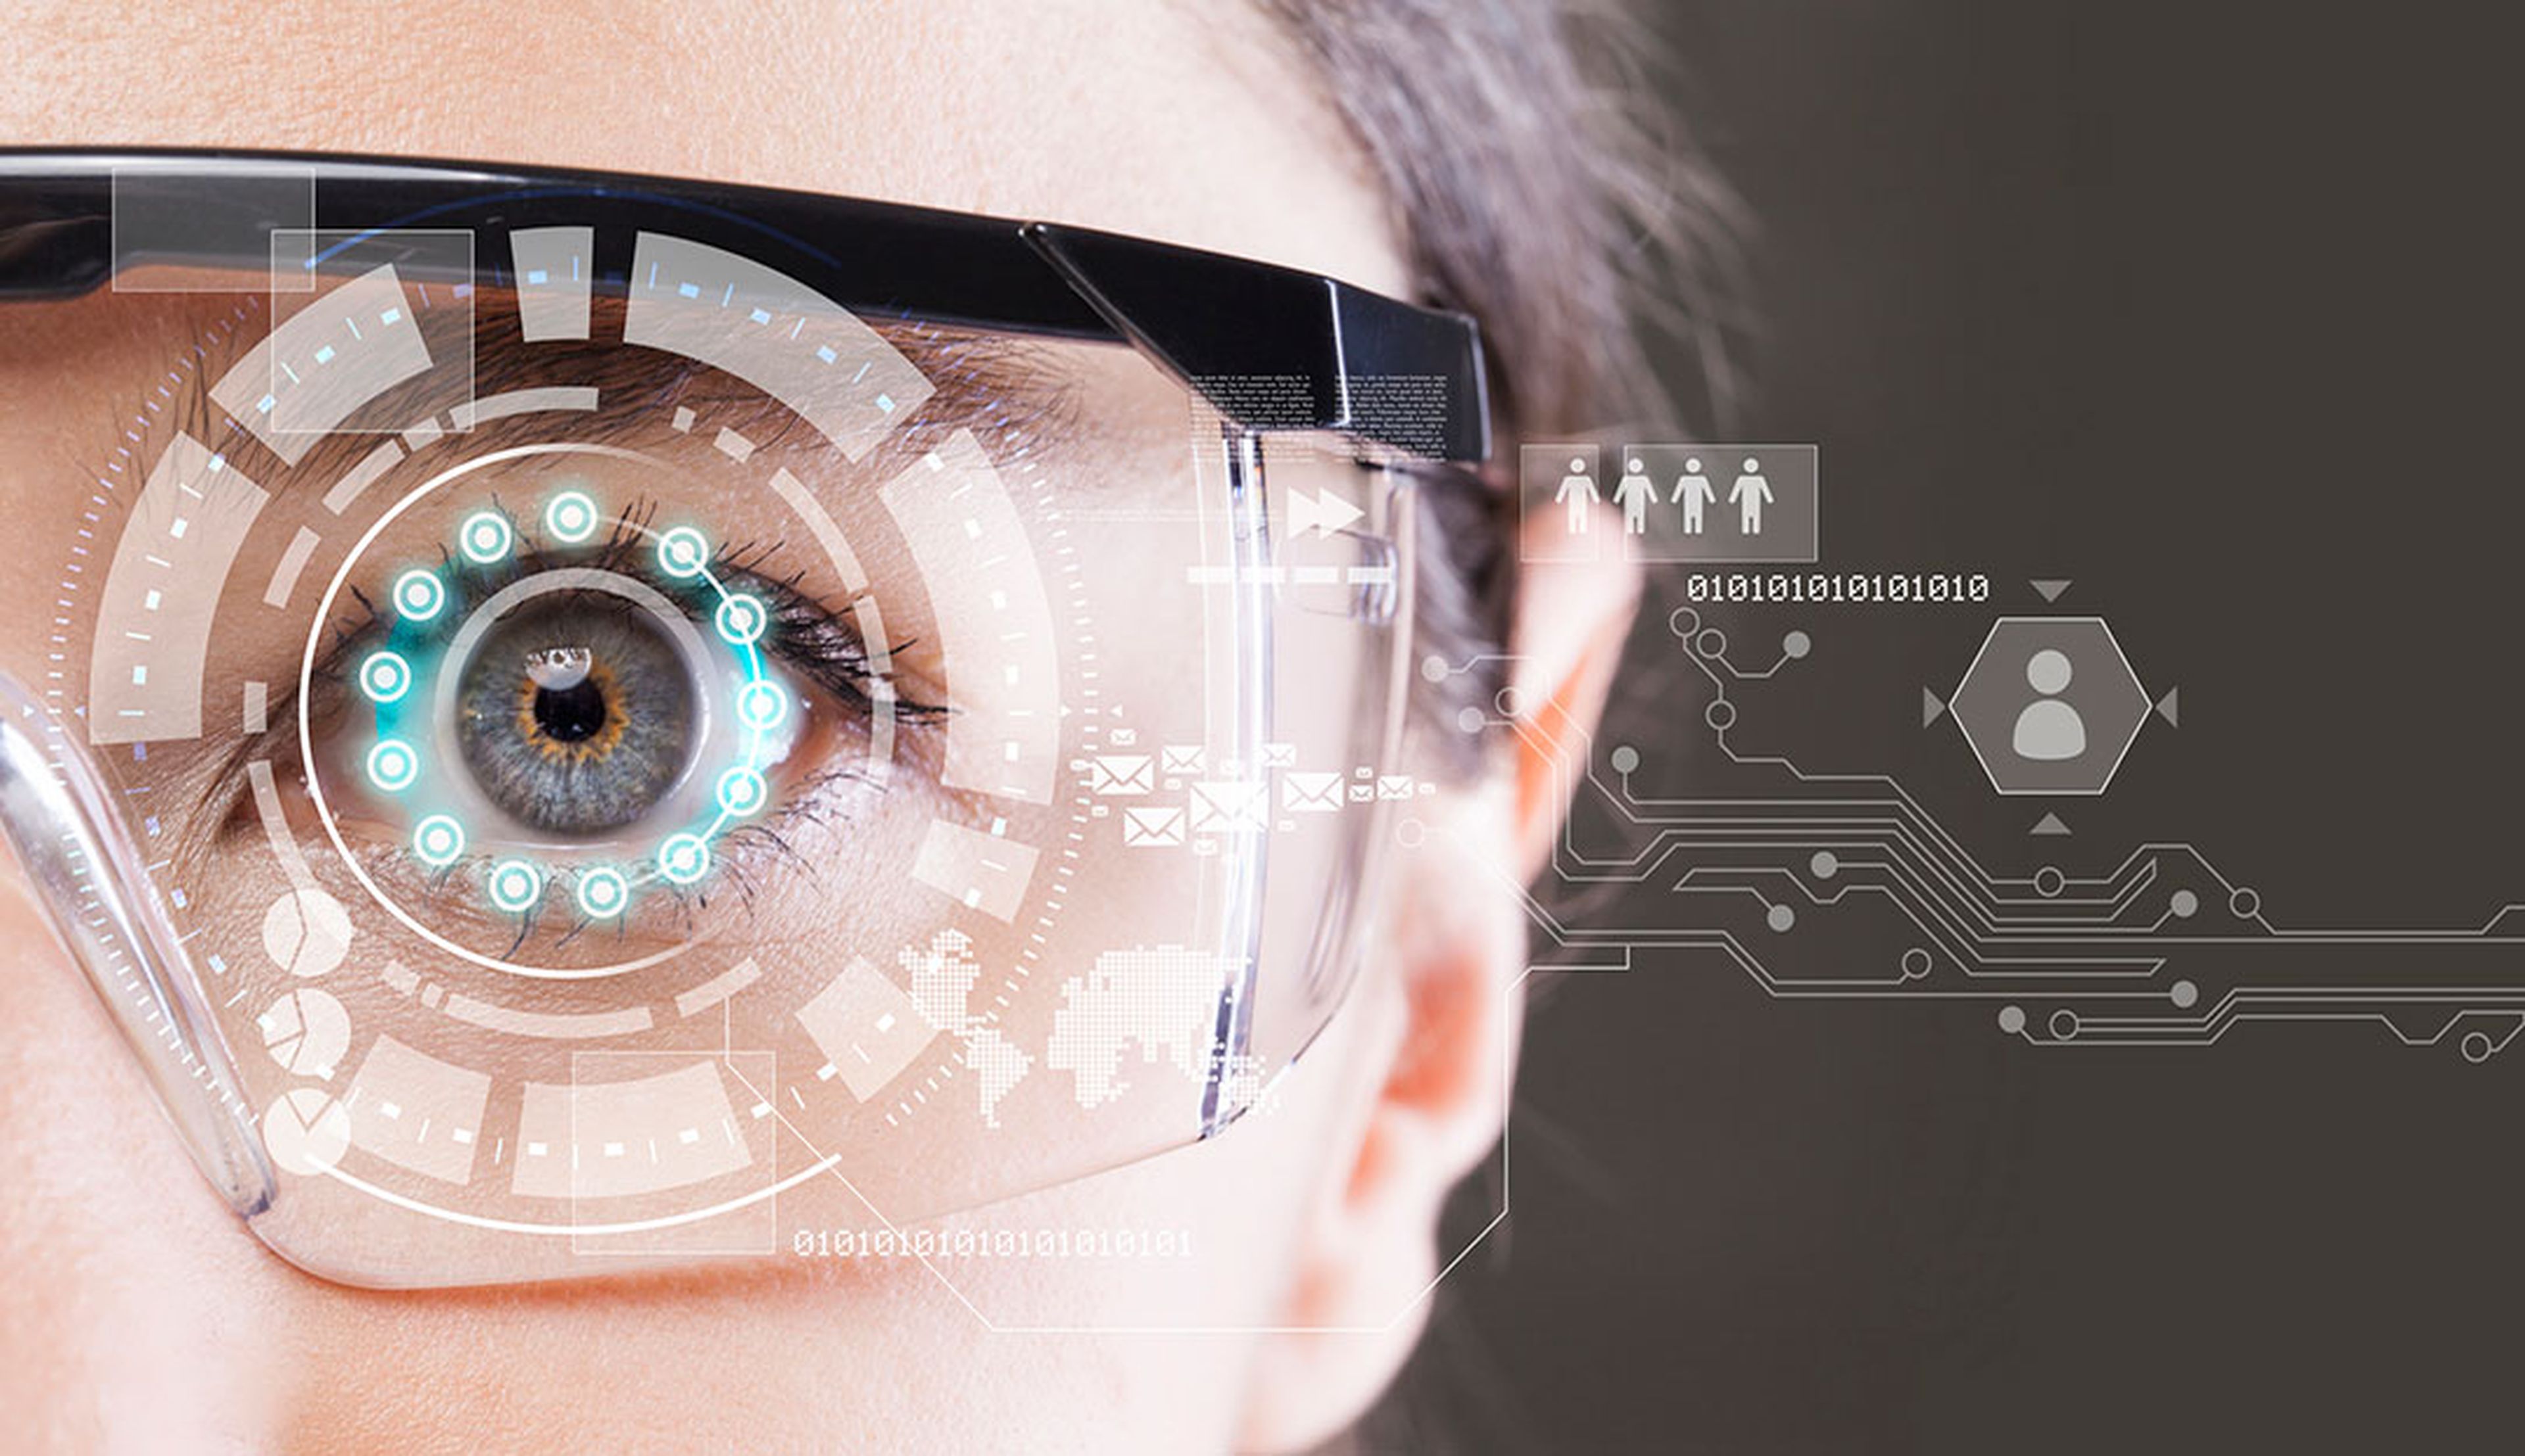 Nuevo diseño de gafas inteligentes proyecta imágenes en el ojo